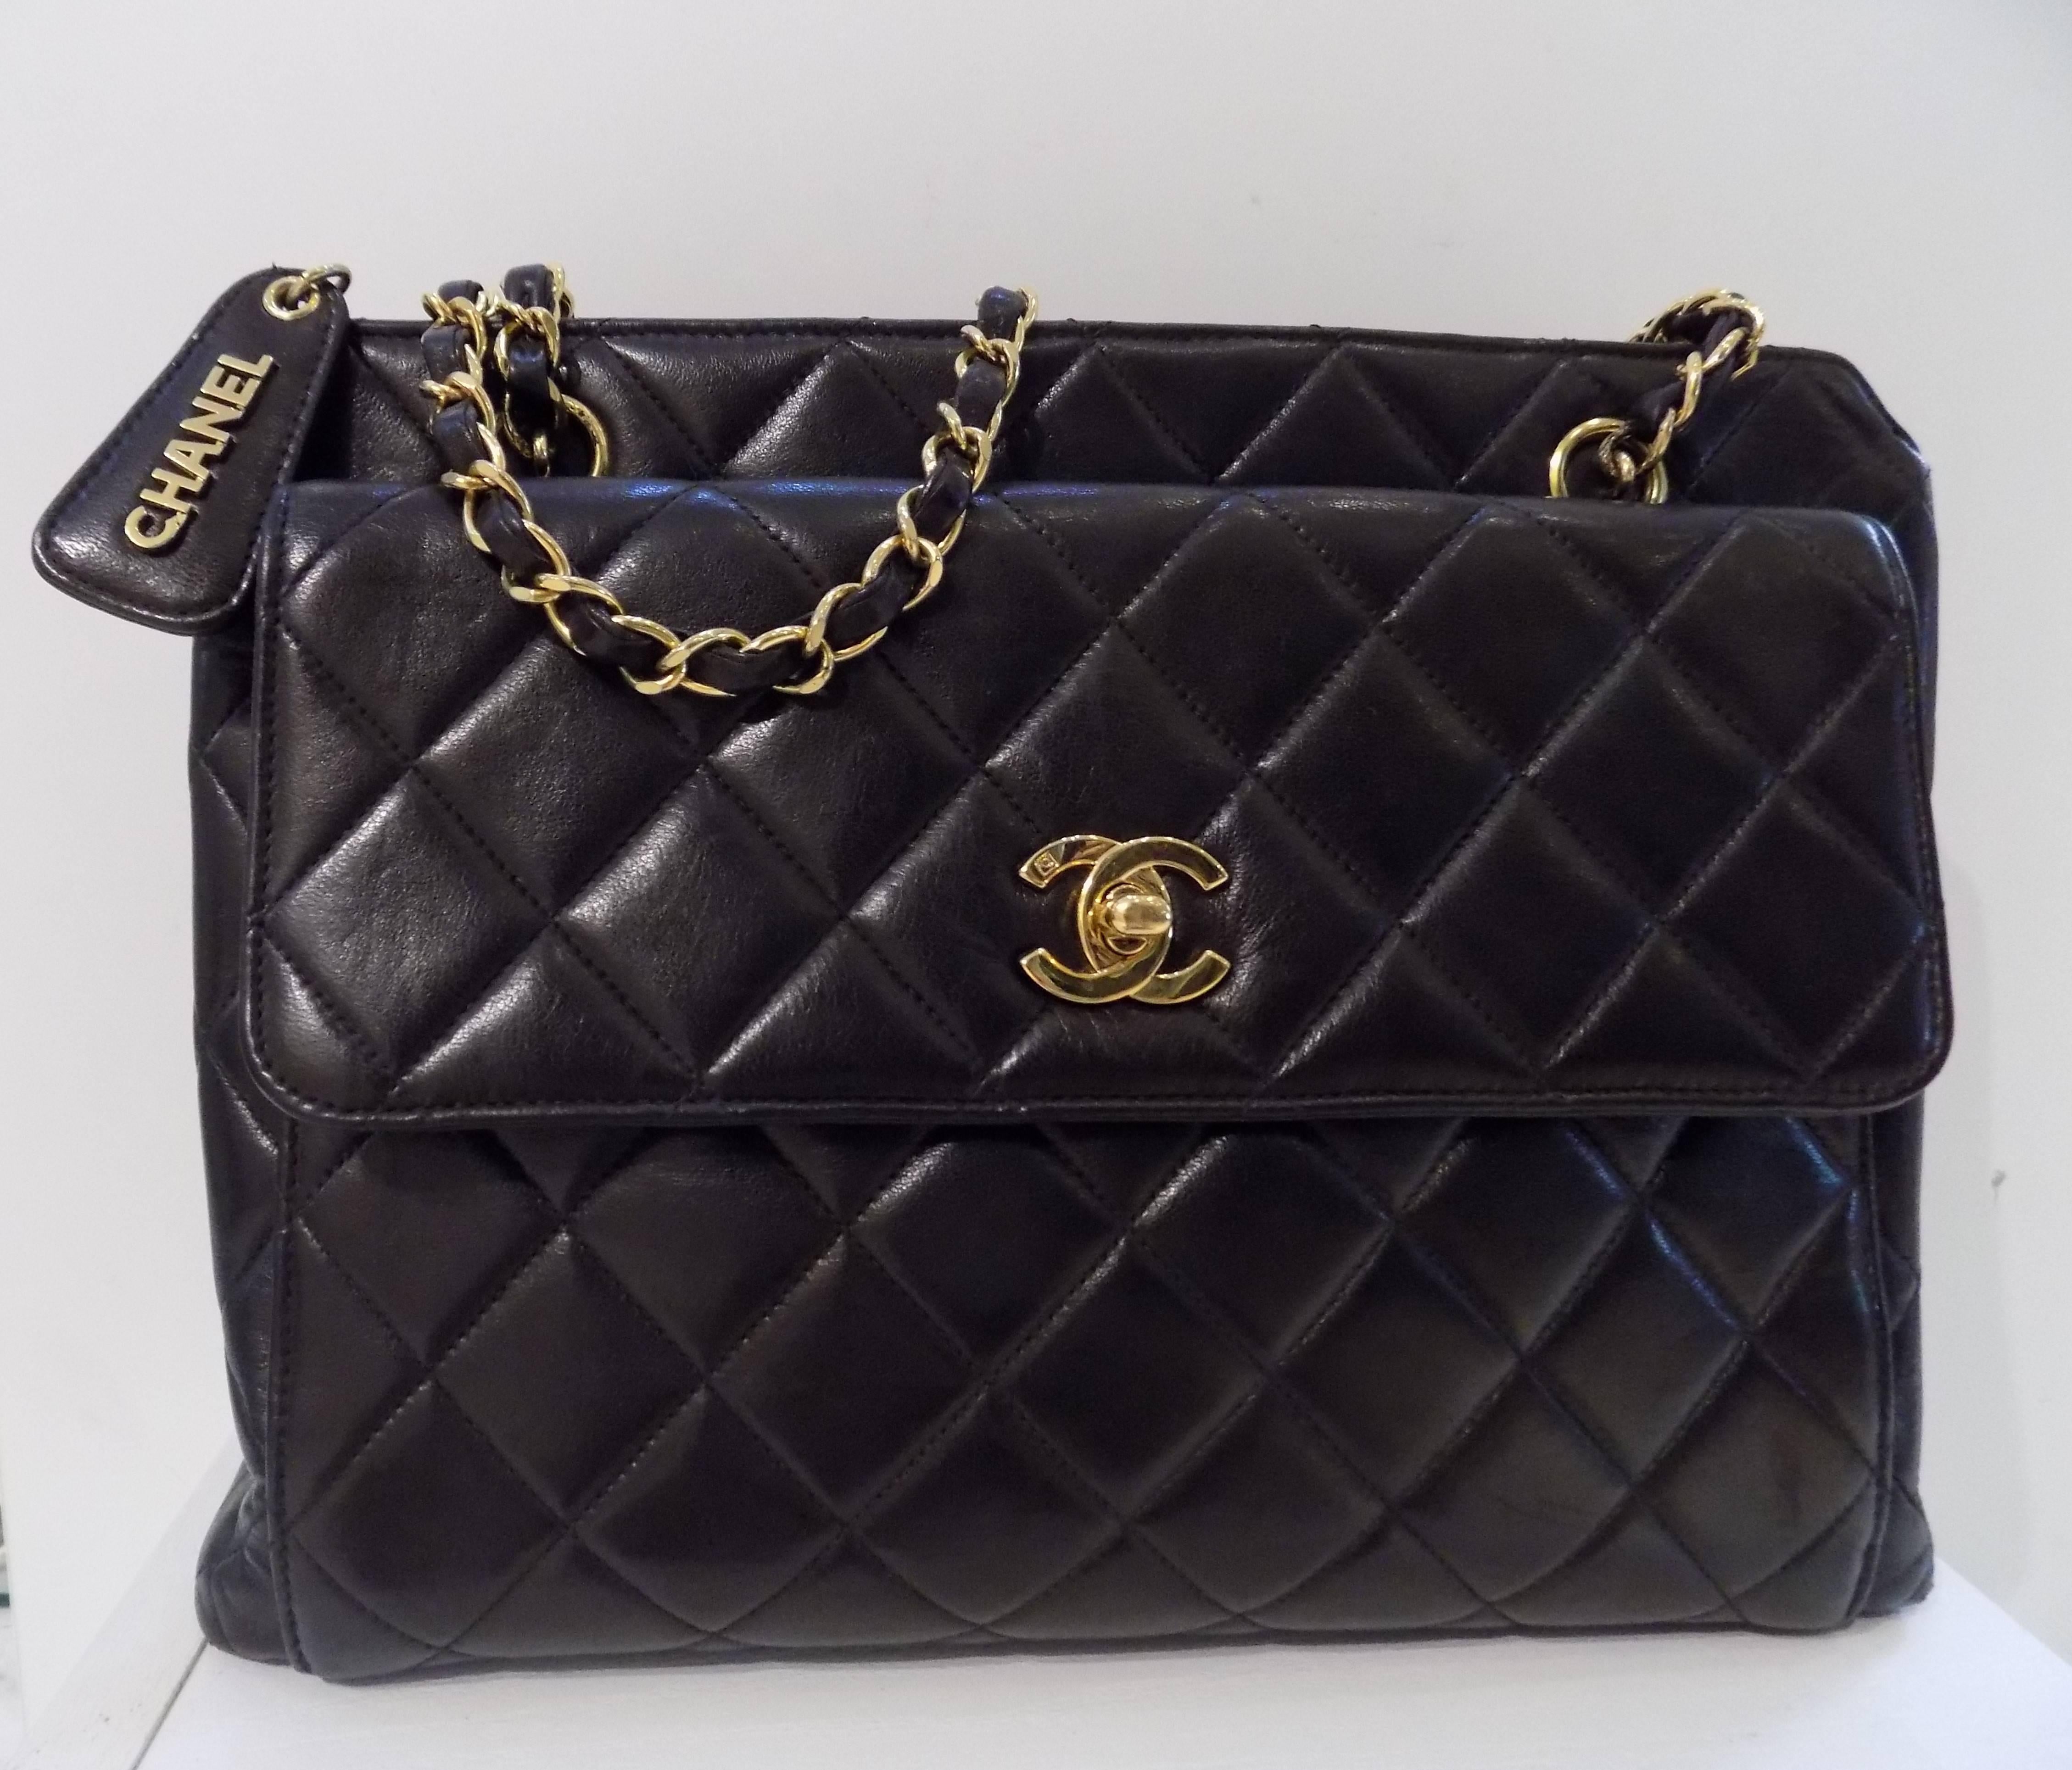 Women's or Men's Chanel Black Lambskin Leather Bag